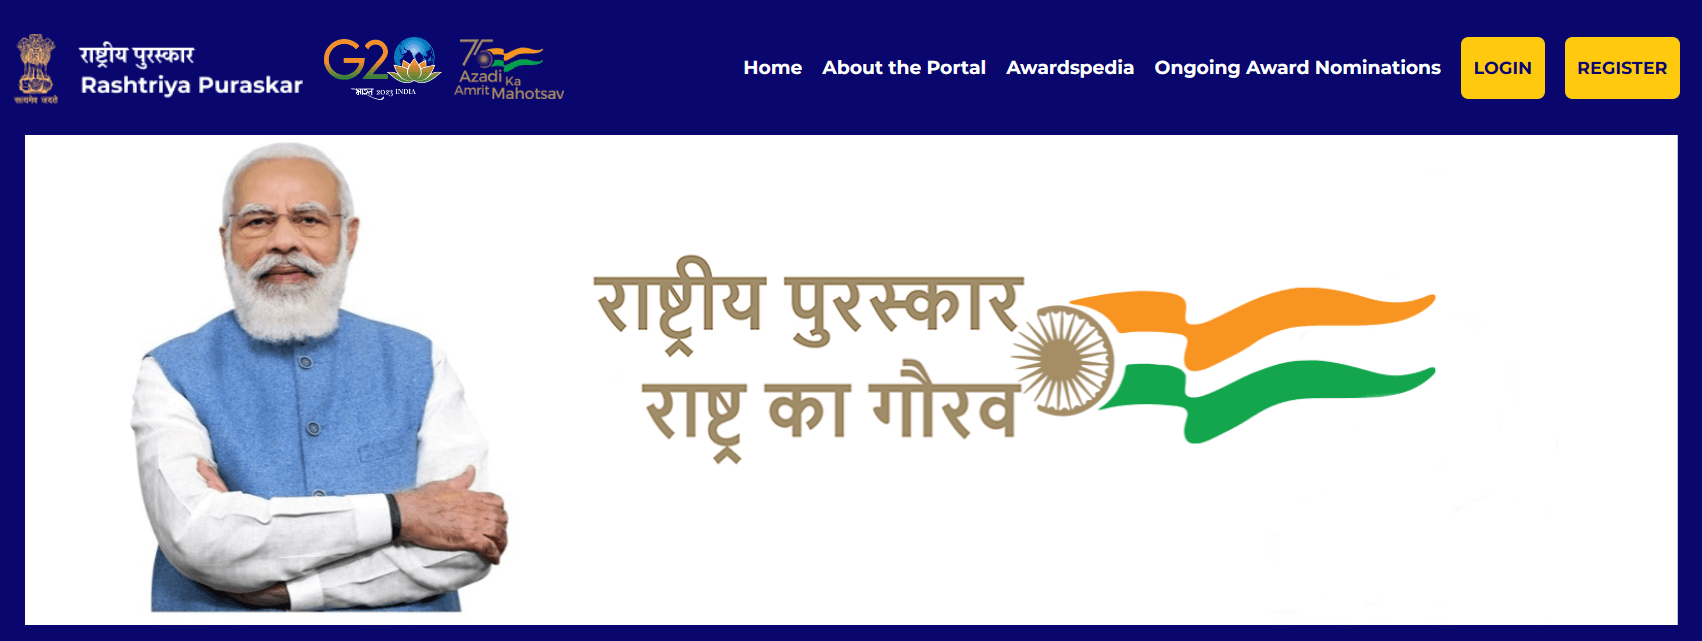 राष्ट्रीय पुरस्कार पोर्टल लॉन्च हुआ, जानिए Rashtriya Puraskar Portal पर कैसे करें आवेदन